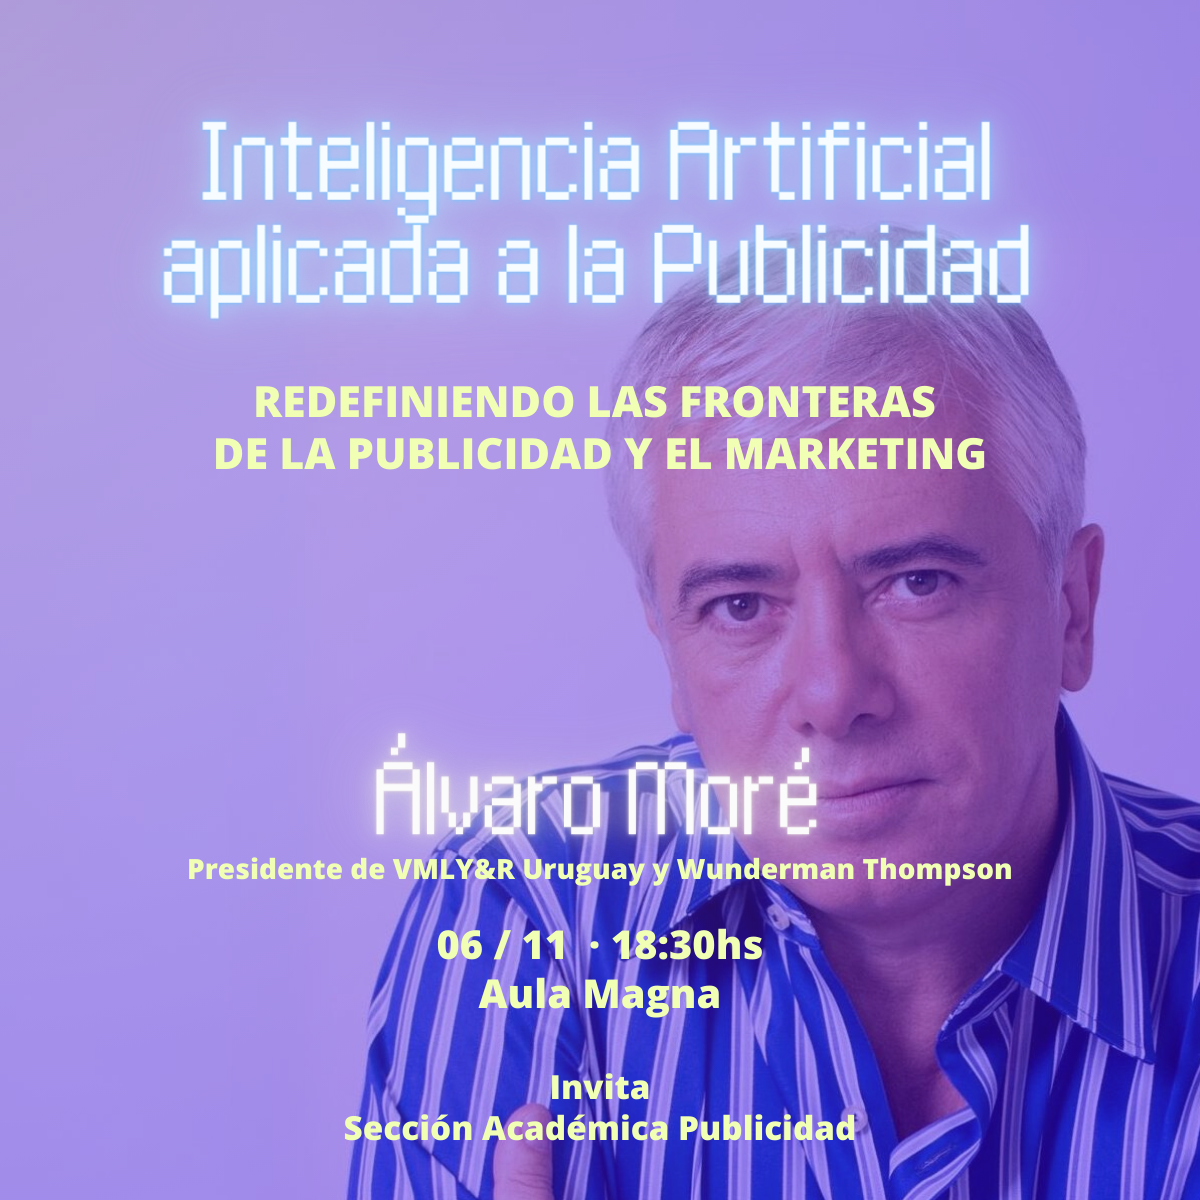 Afiche de la actividad con la foto de Álvaro Moré y los datos del evento